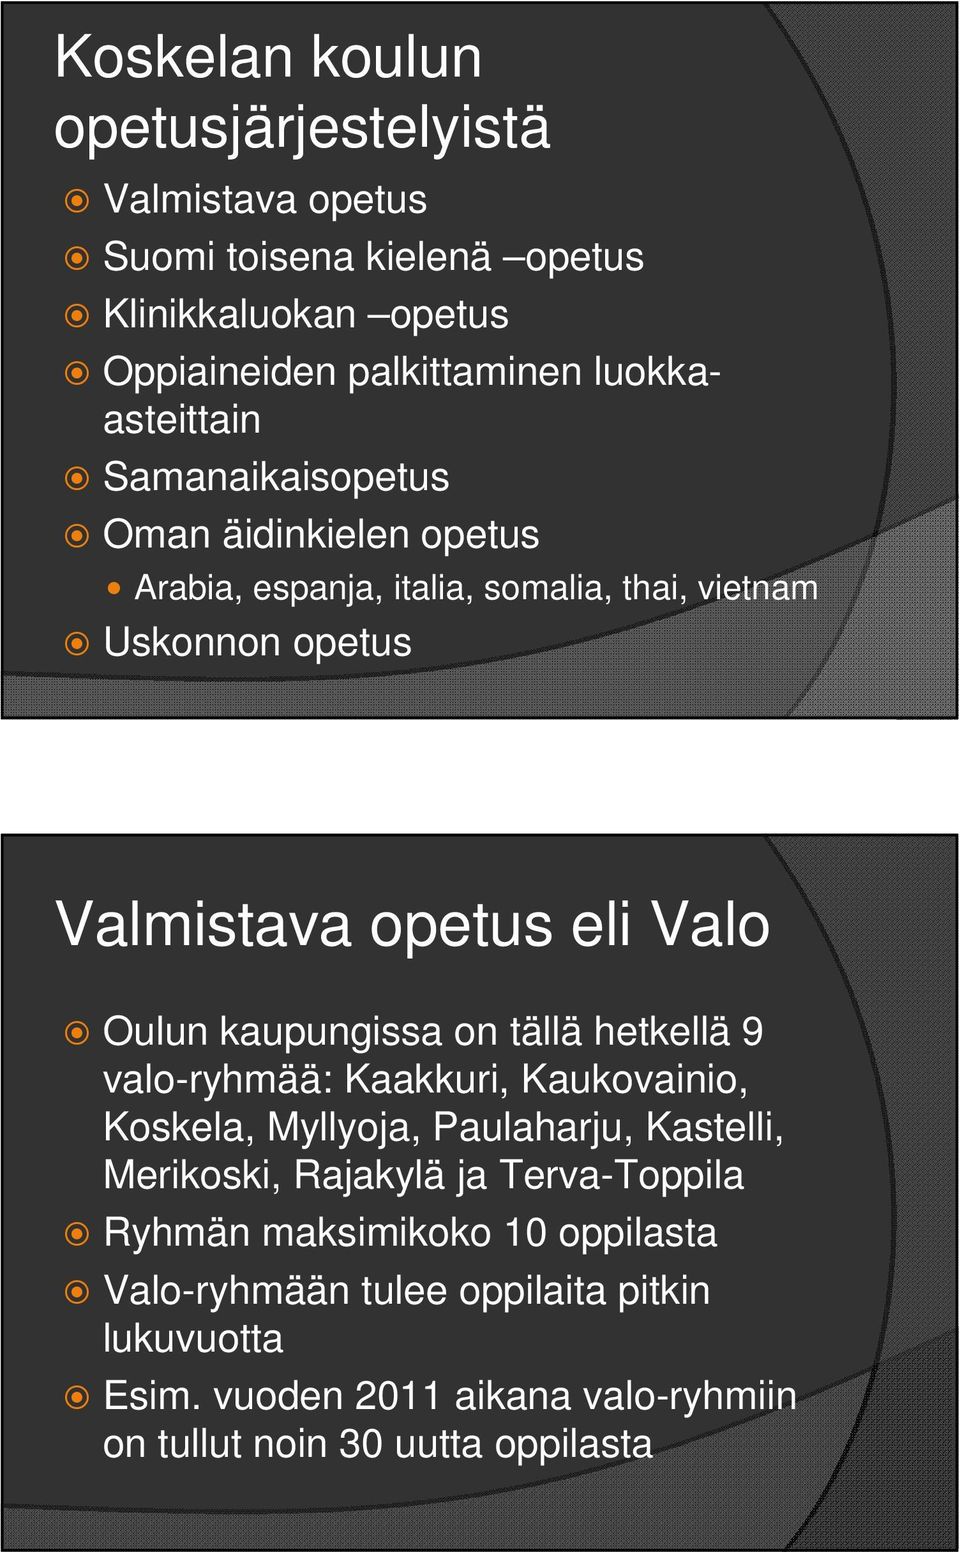 Valo Oulun kaupungissa on tällä hetkellä 9 valo-ryhmää: Kaakkuri, Kaukovainio, Koskela, Myllyoja, Paulaharju, Kastelli, Merikoski, Rajakylä ja